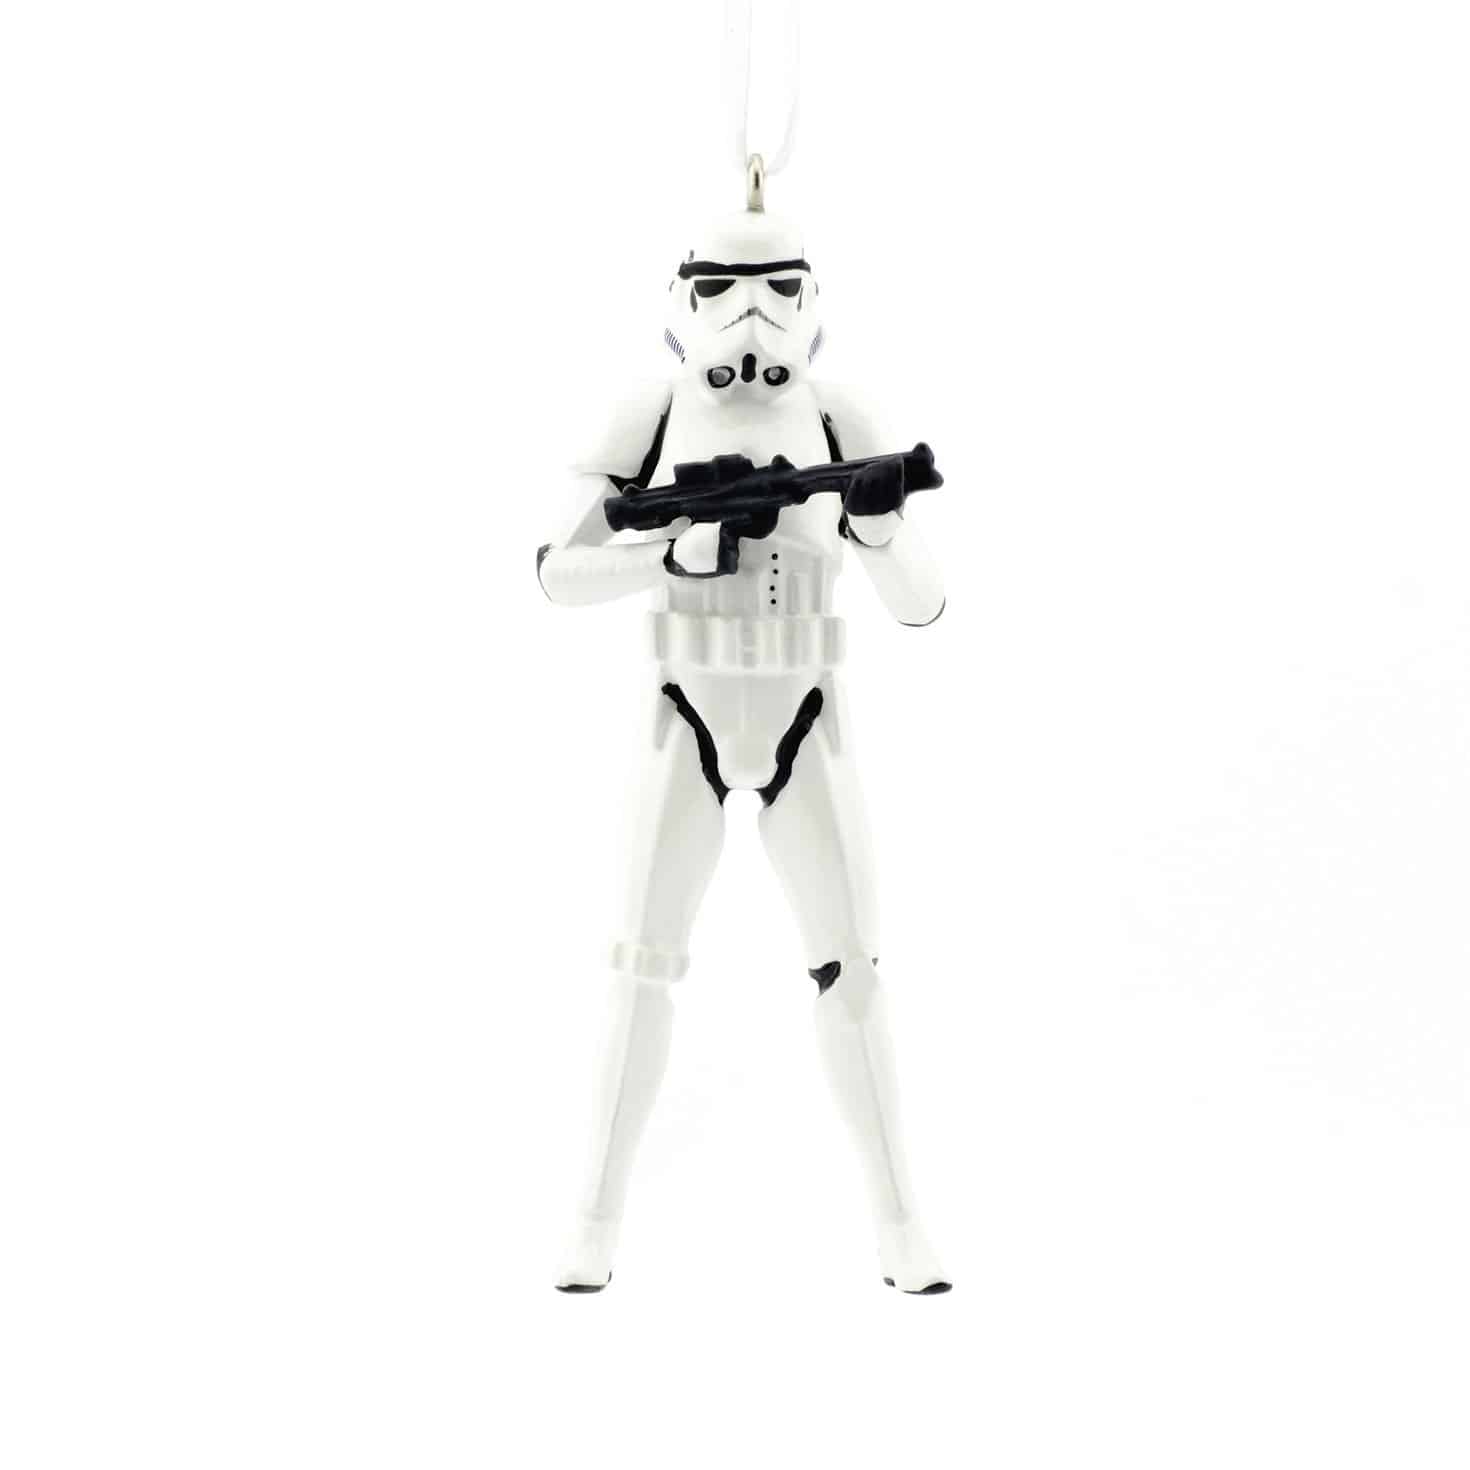 LIGHTNING DEAL ALERT! Hallmark Star Wars Stormtrooper Holiday Ornament – 74% off!